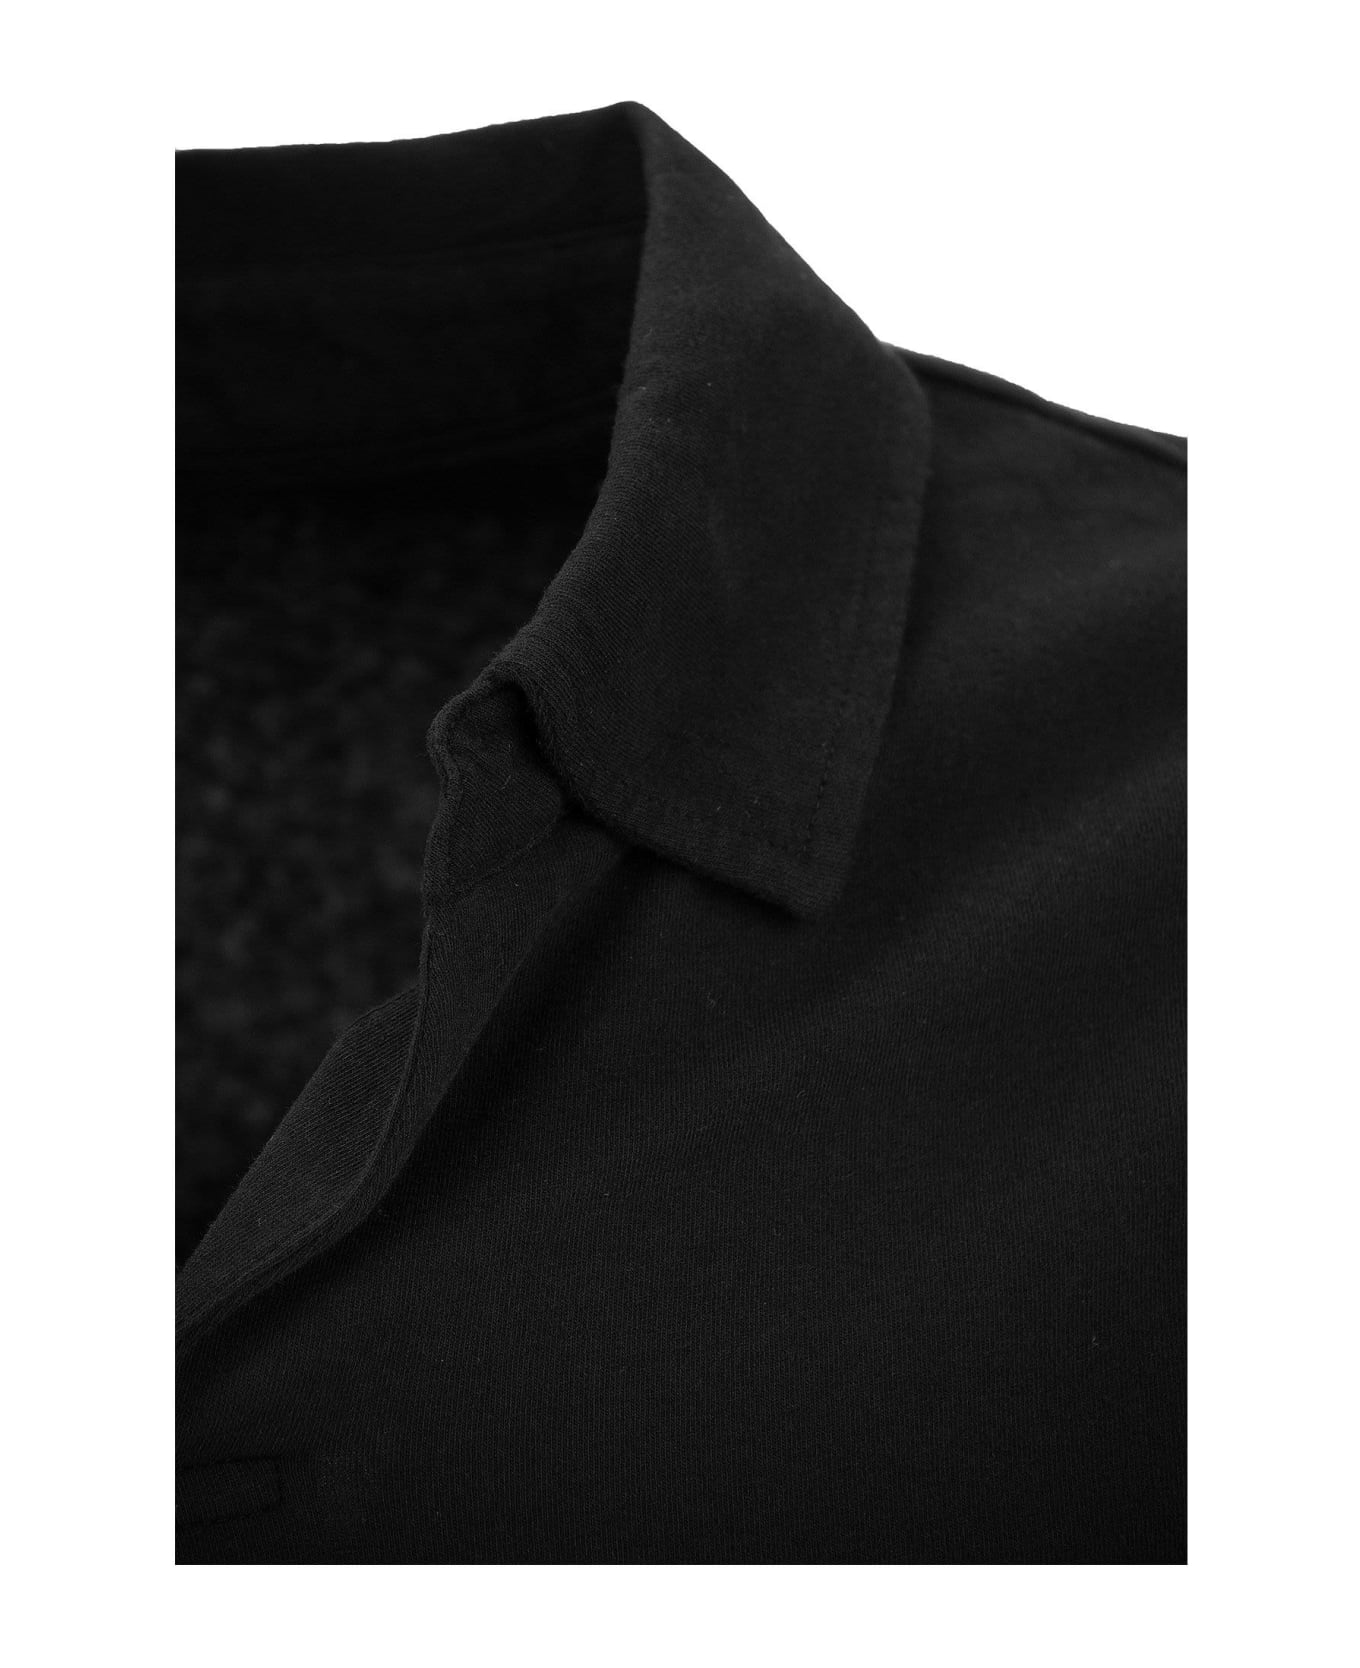 Majestic Filatures V-neck Short-sleeved Polo Shirt - Black ポロシャツ